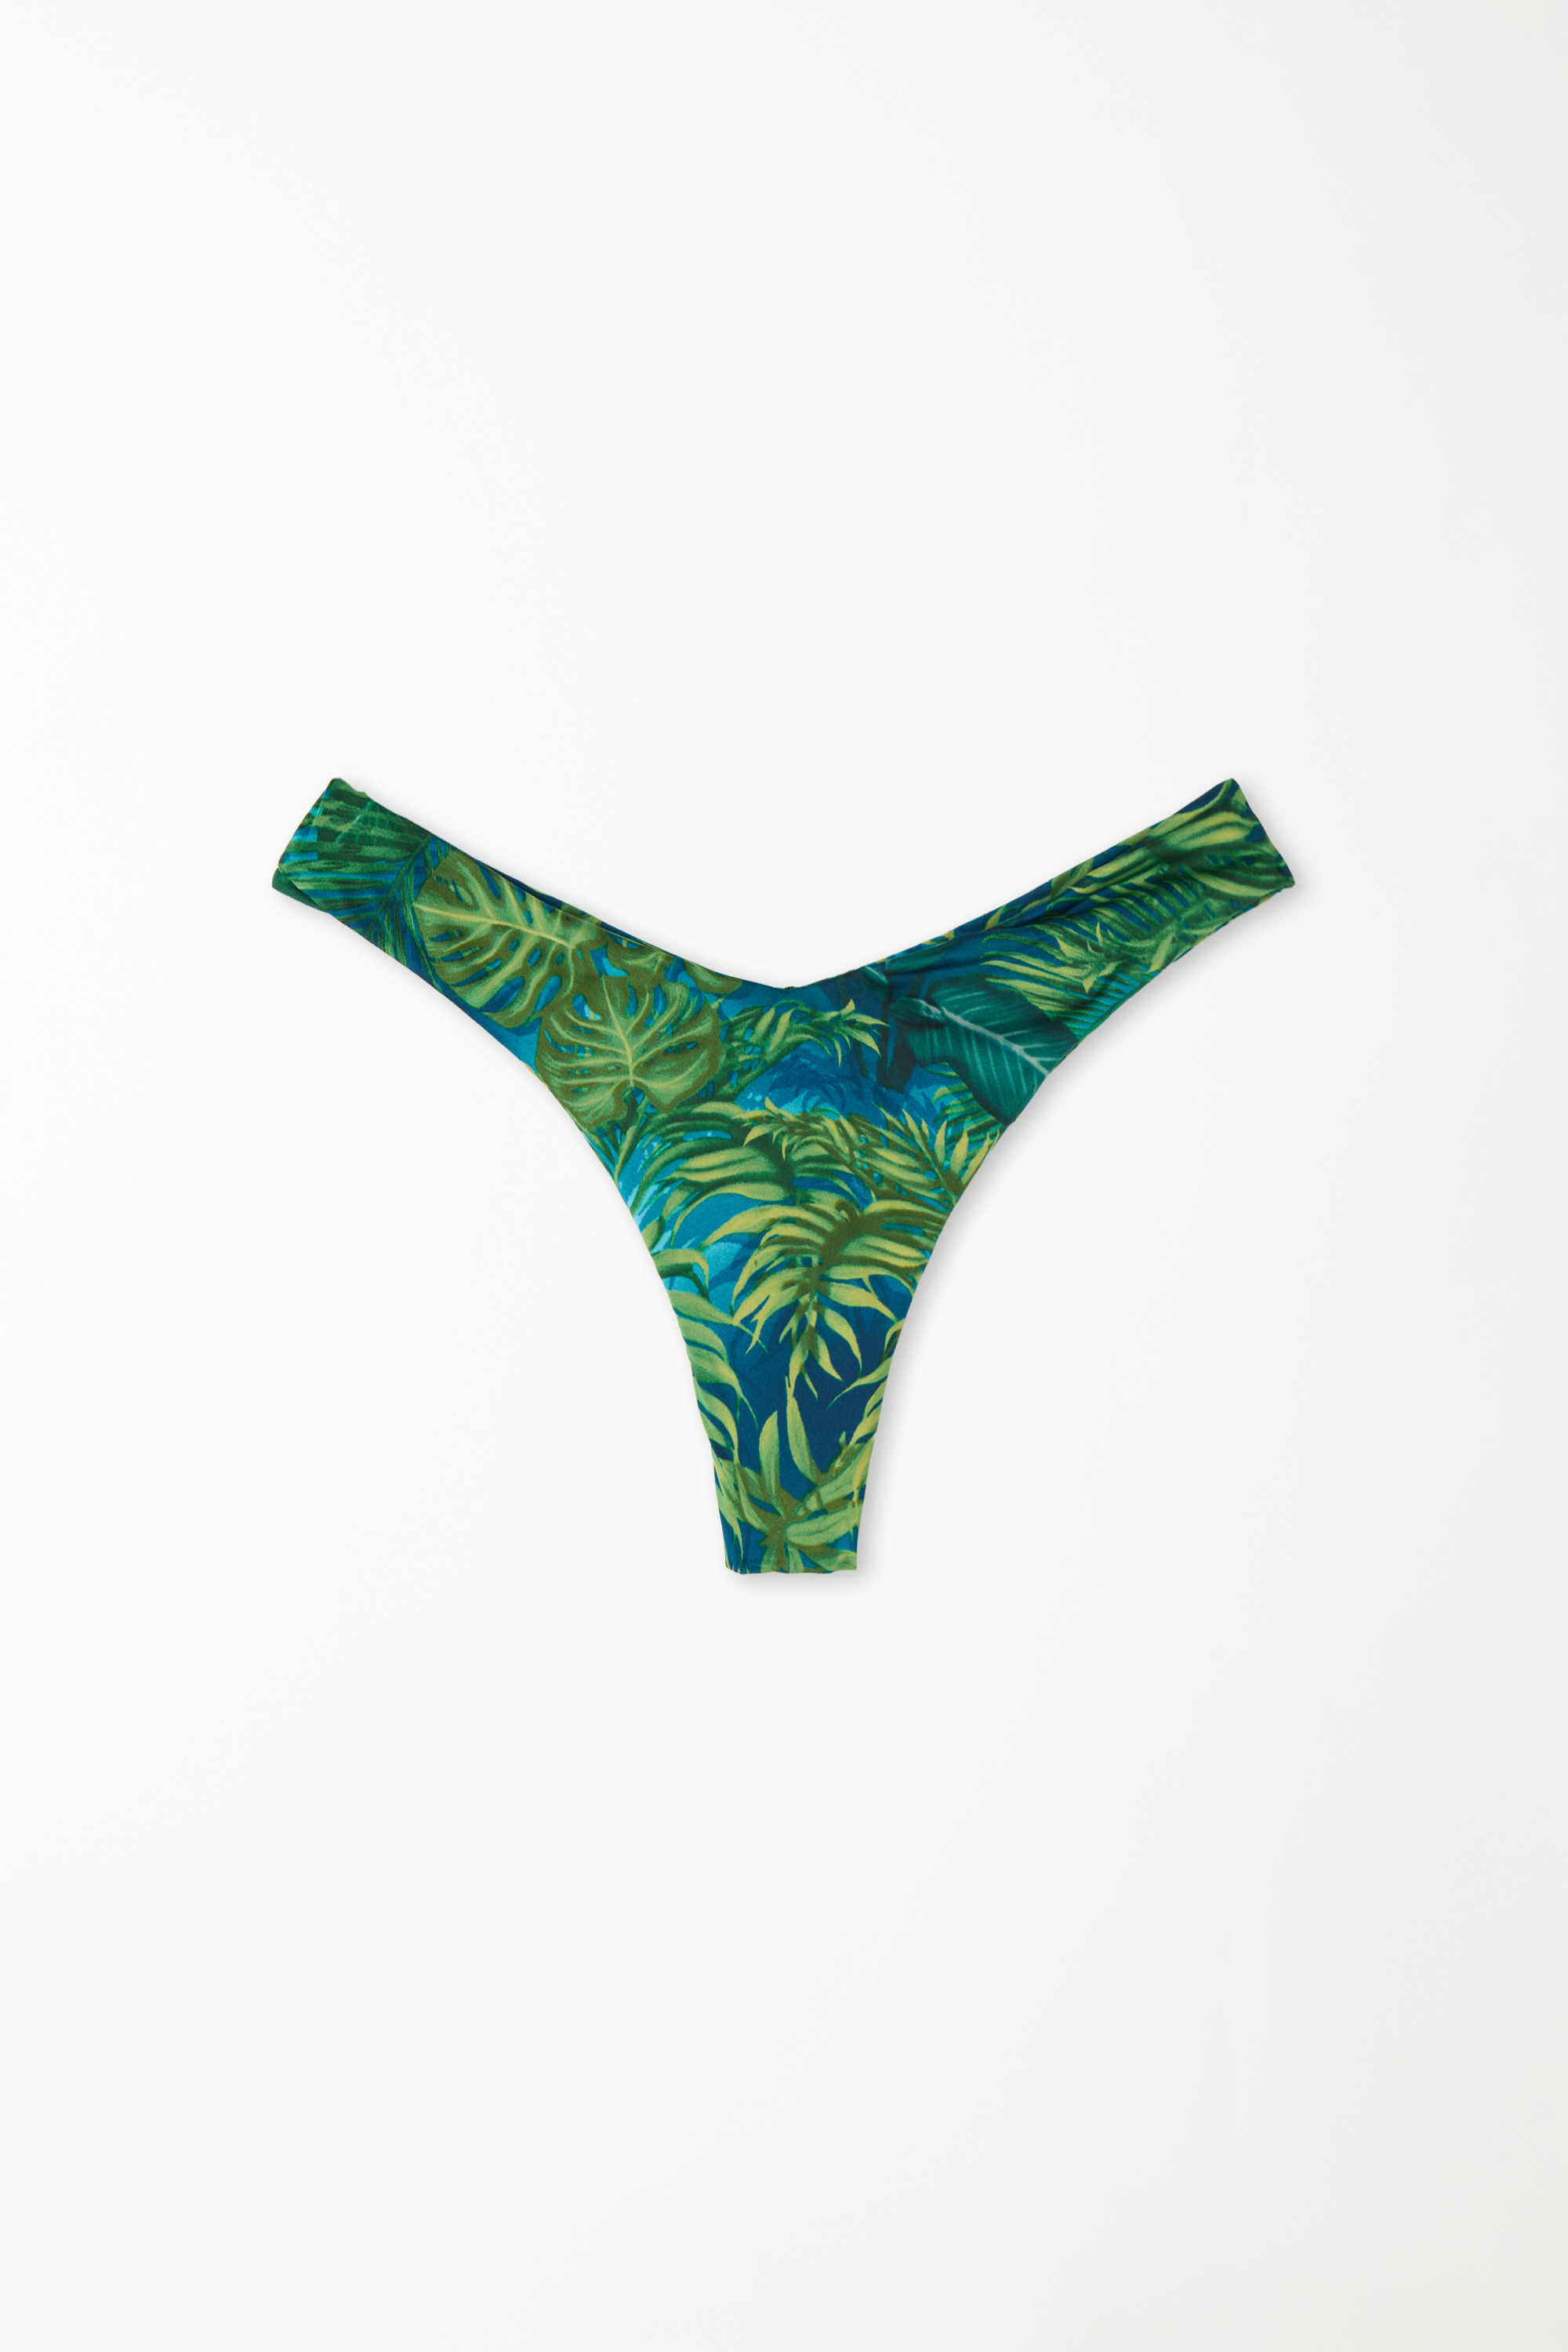 Emerald Jungle High-Cut Brazilian Bikini Bottoms